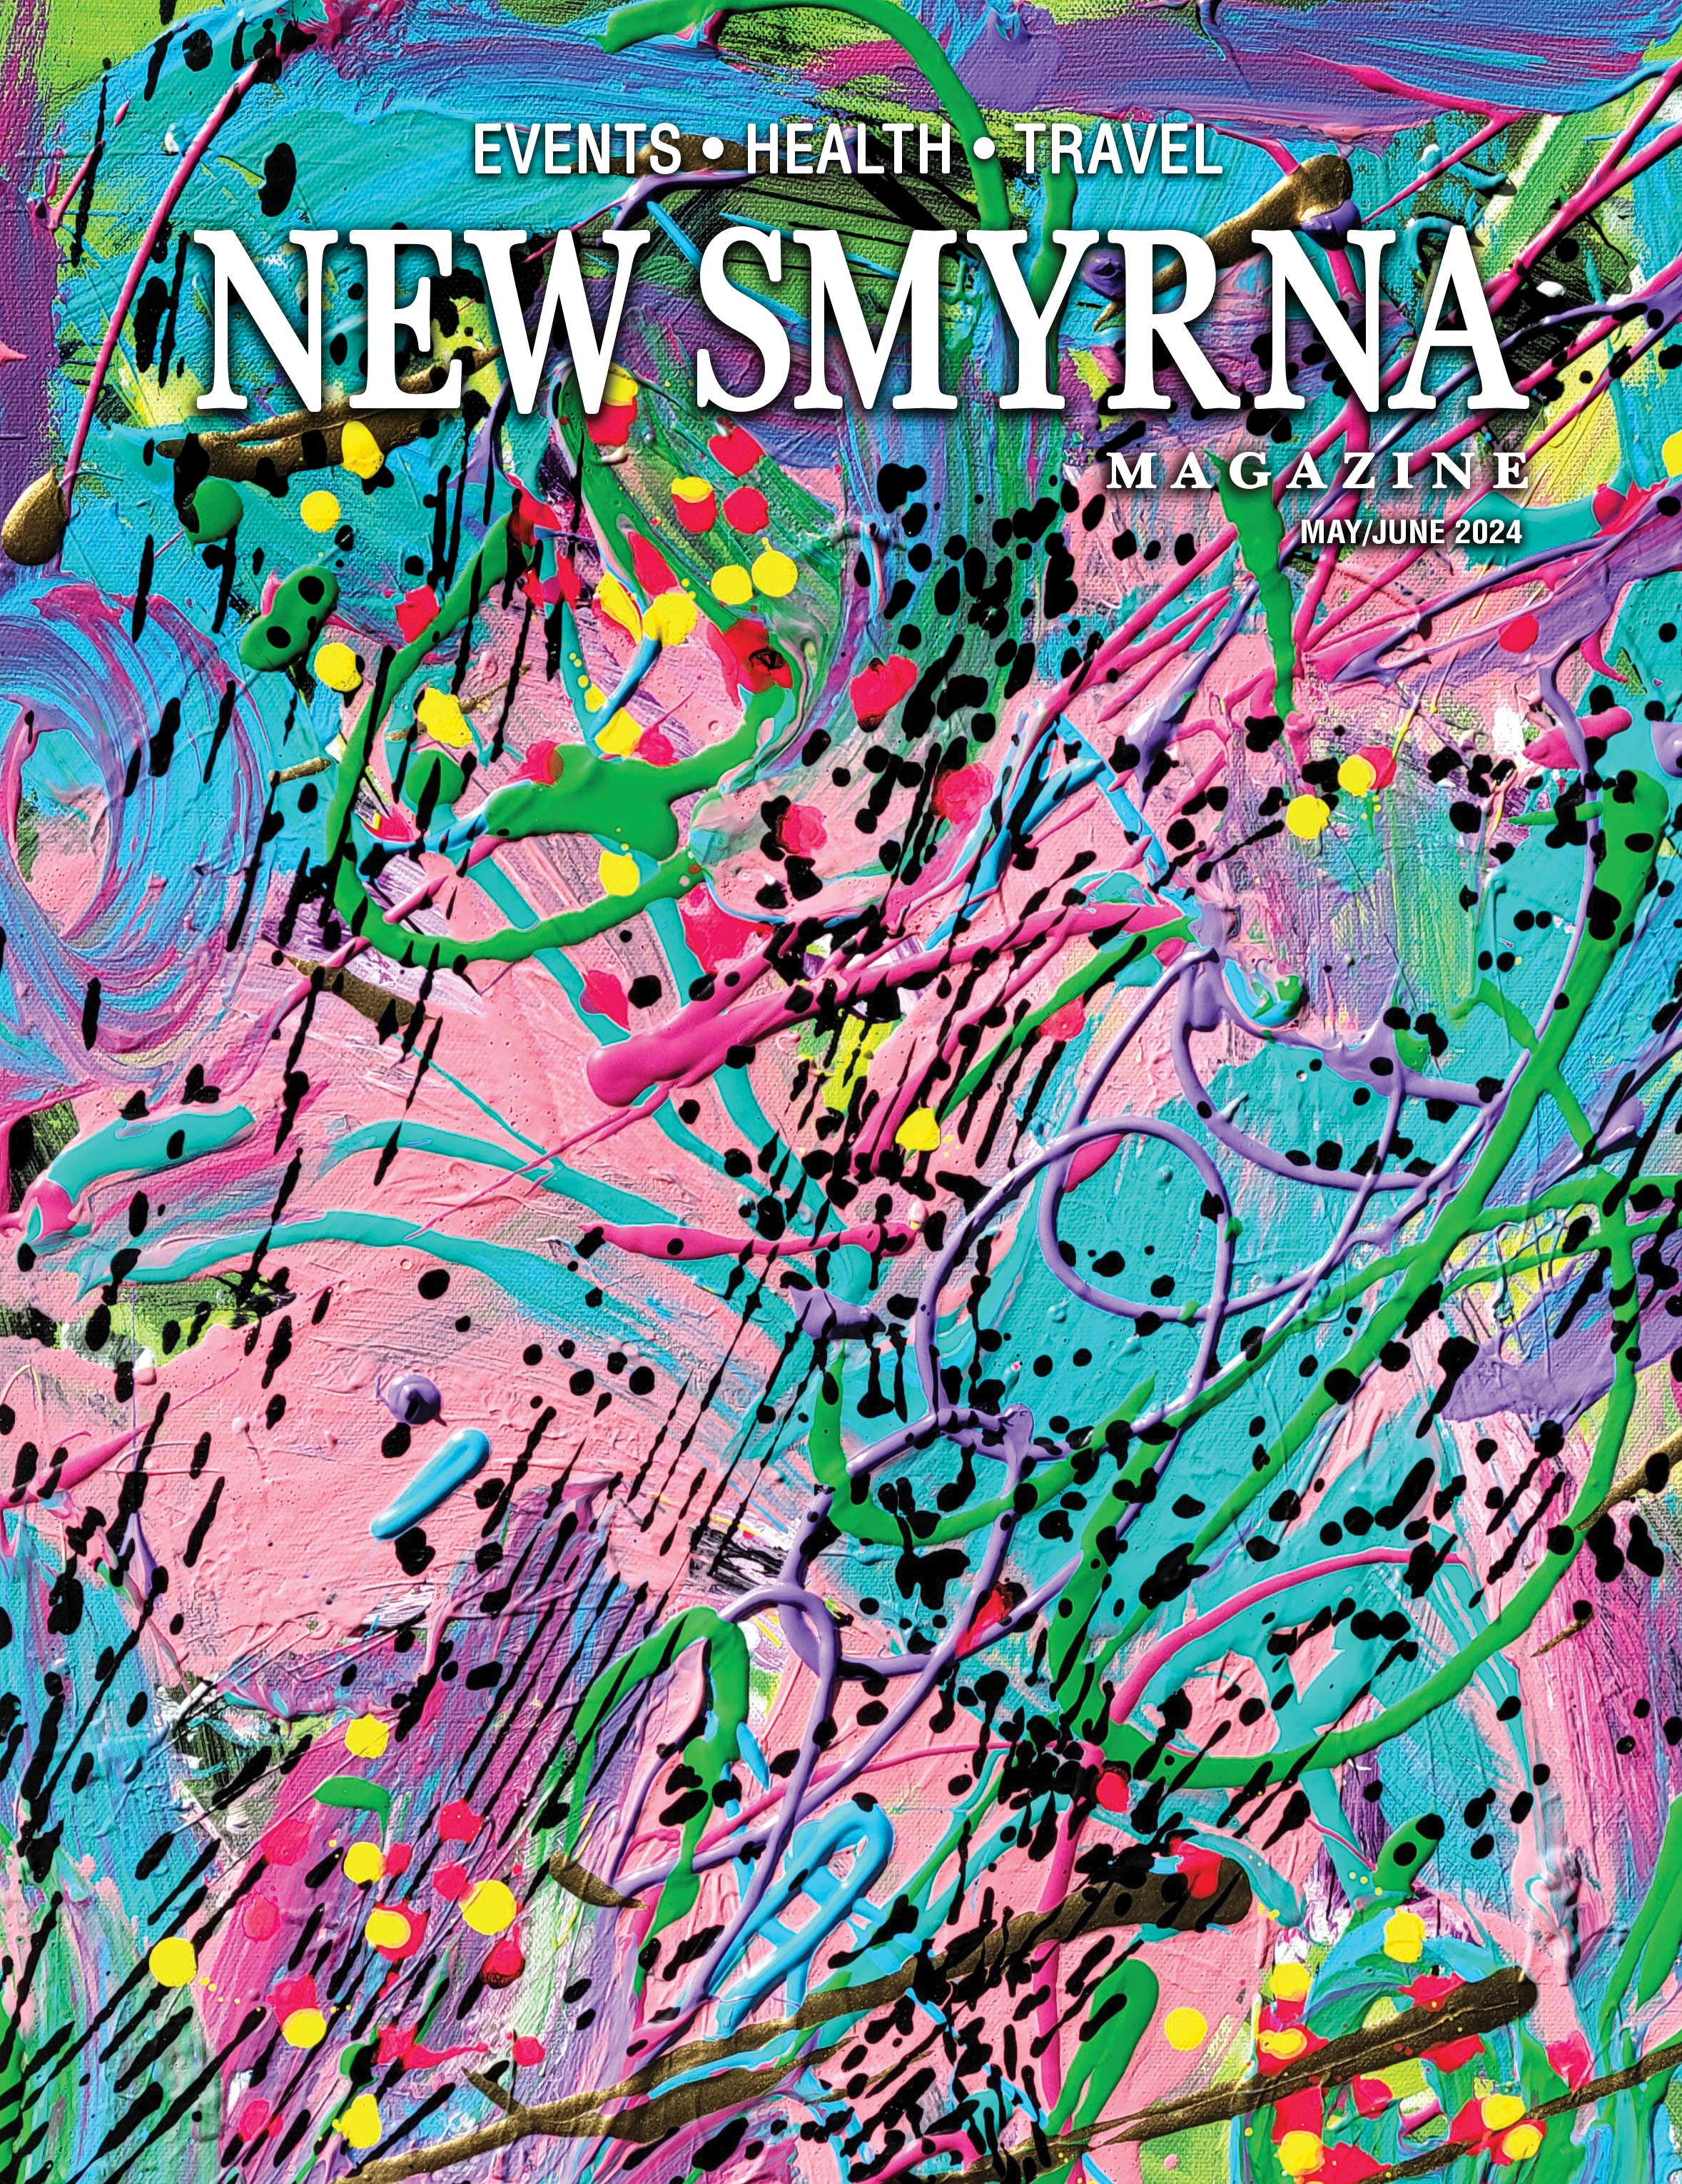 New Smyrna Magazine May/June 2024